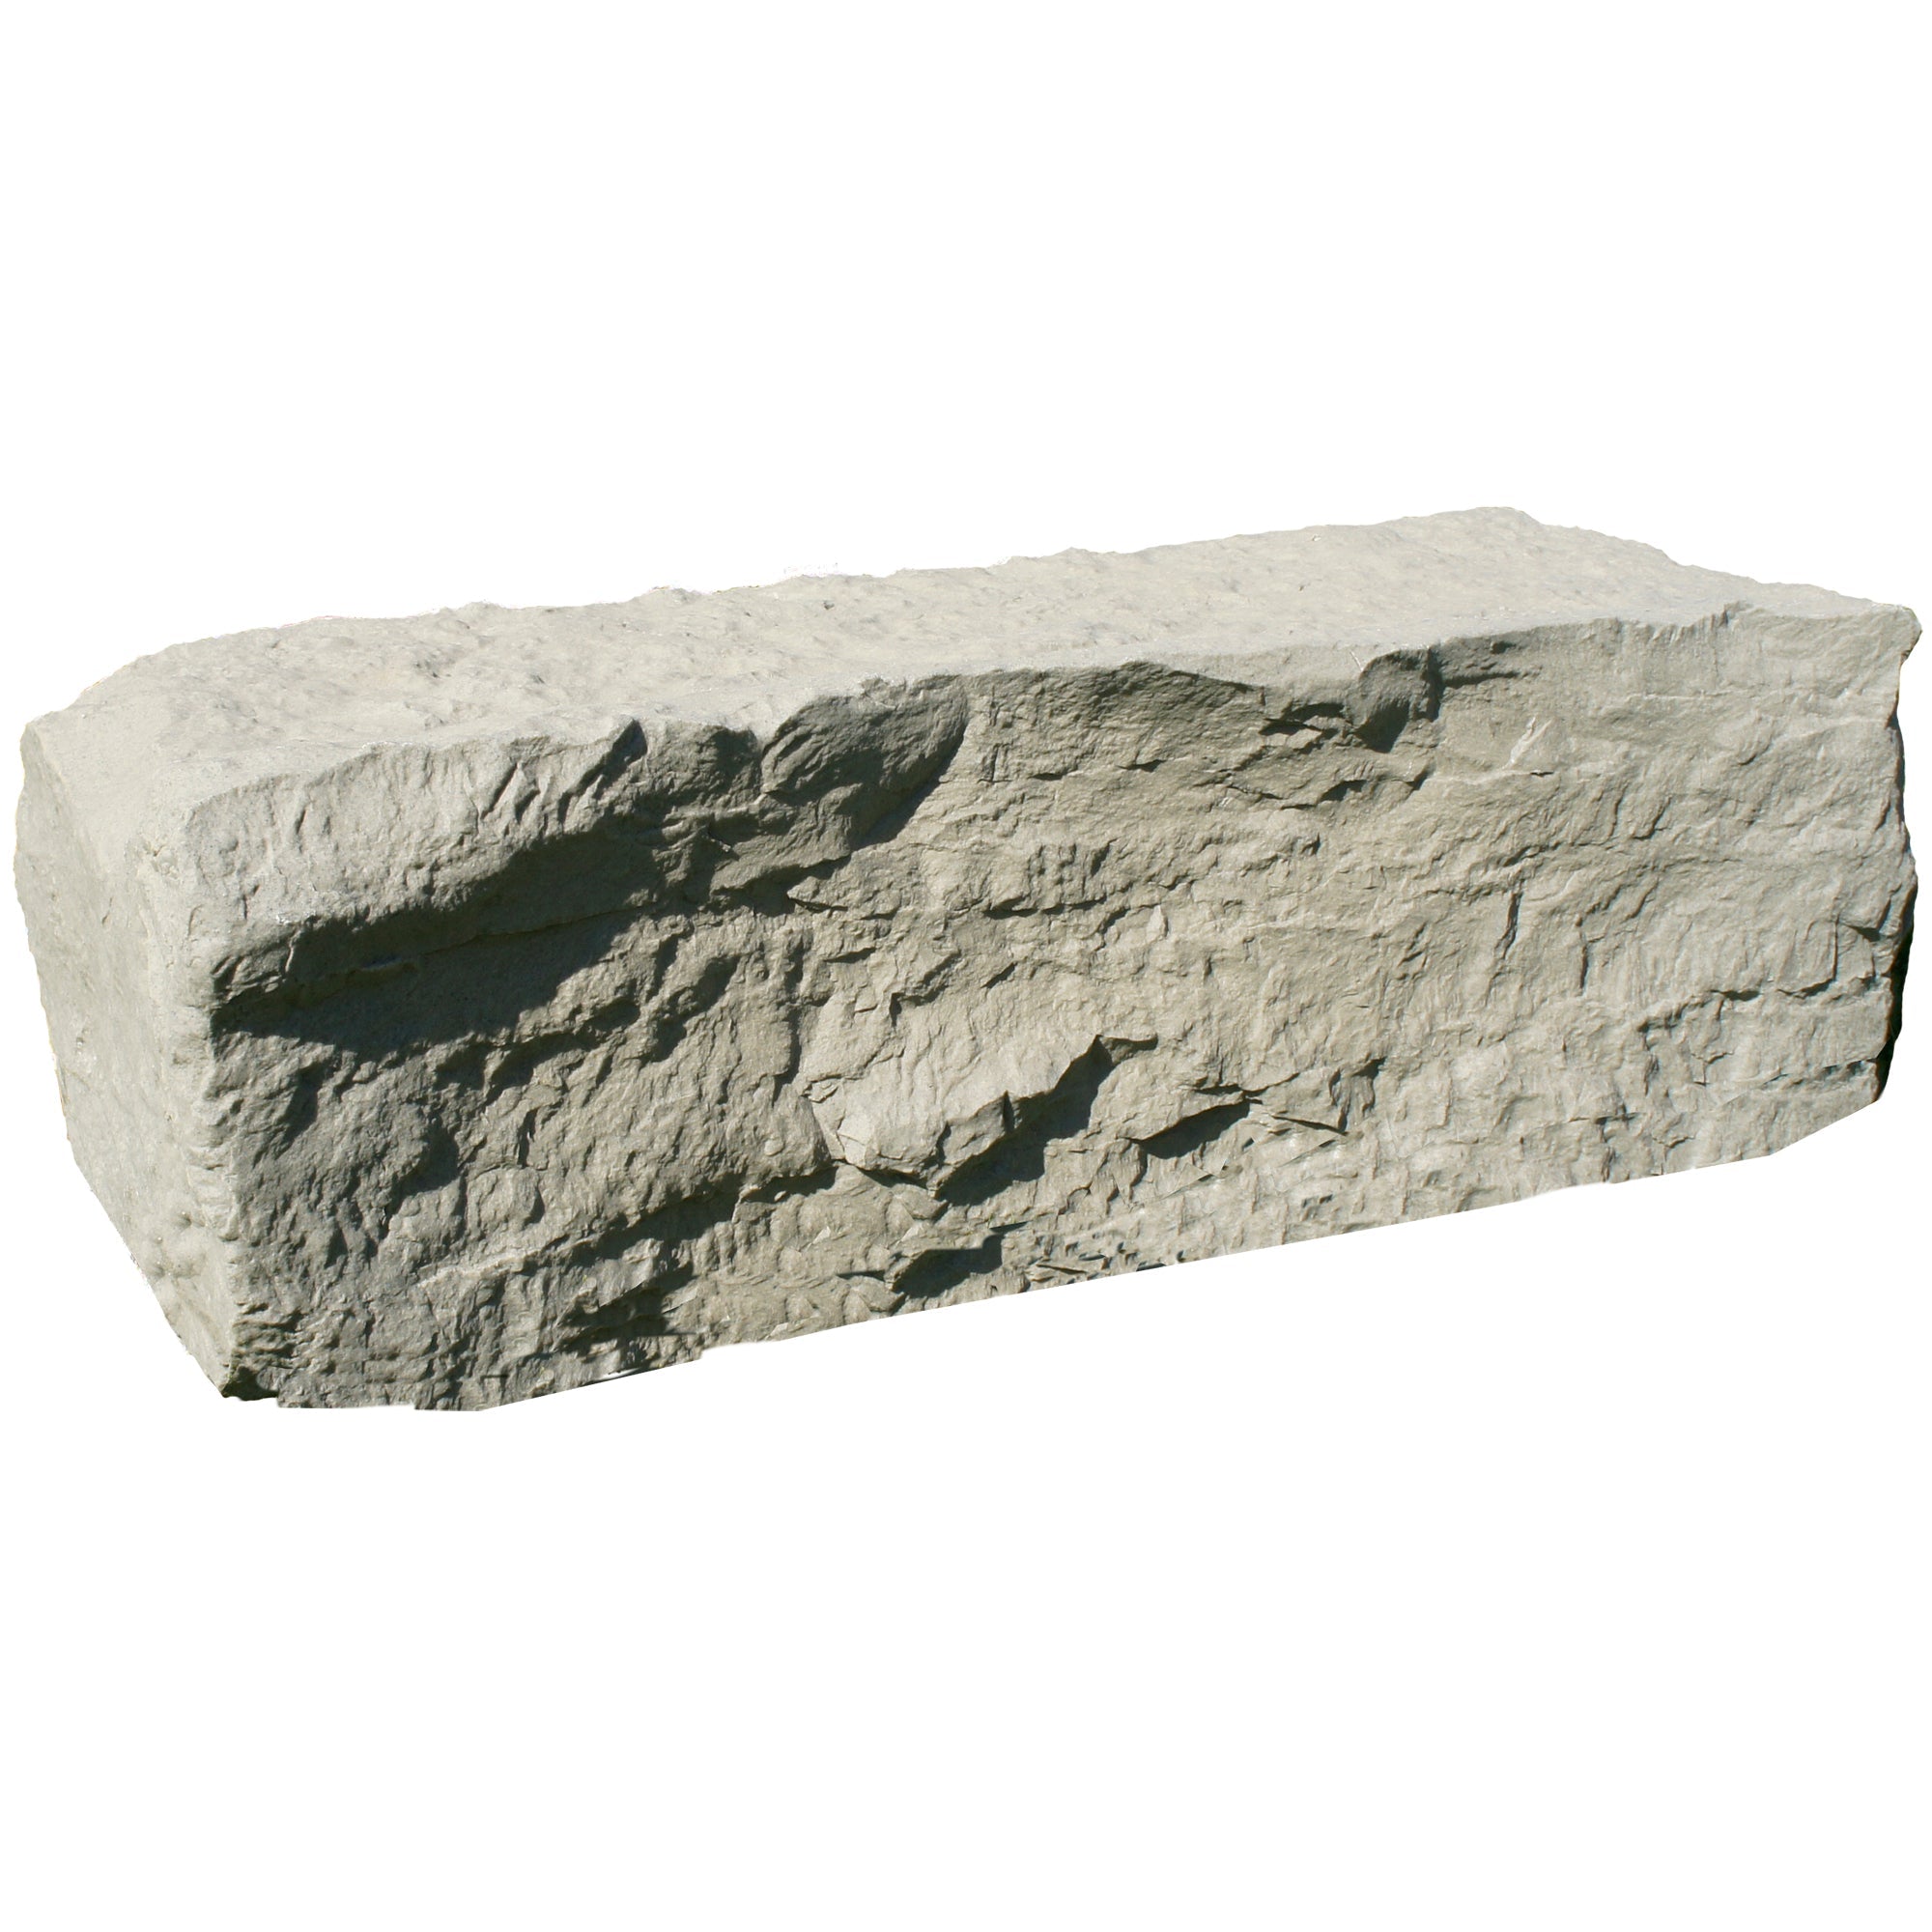 large landscape rock in sandstone on white background